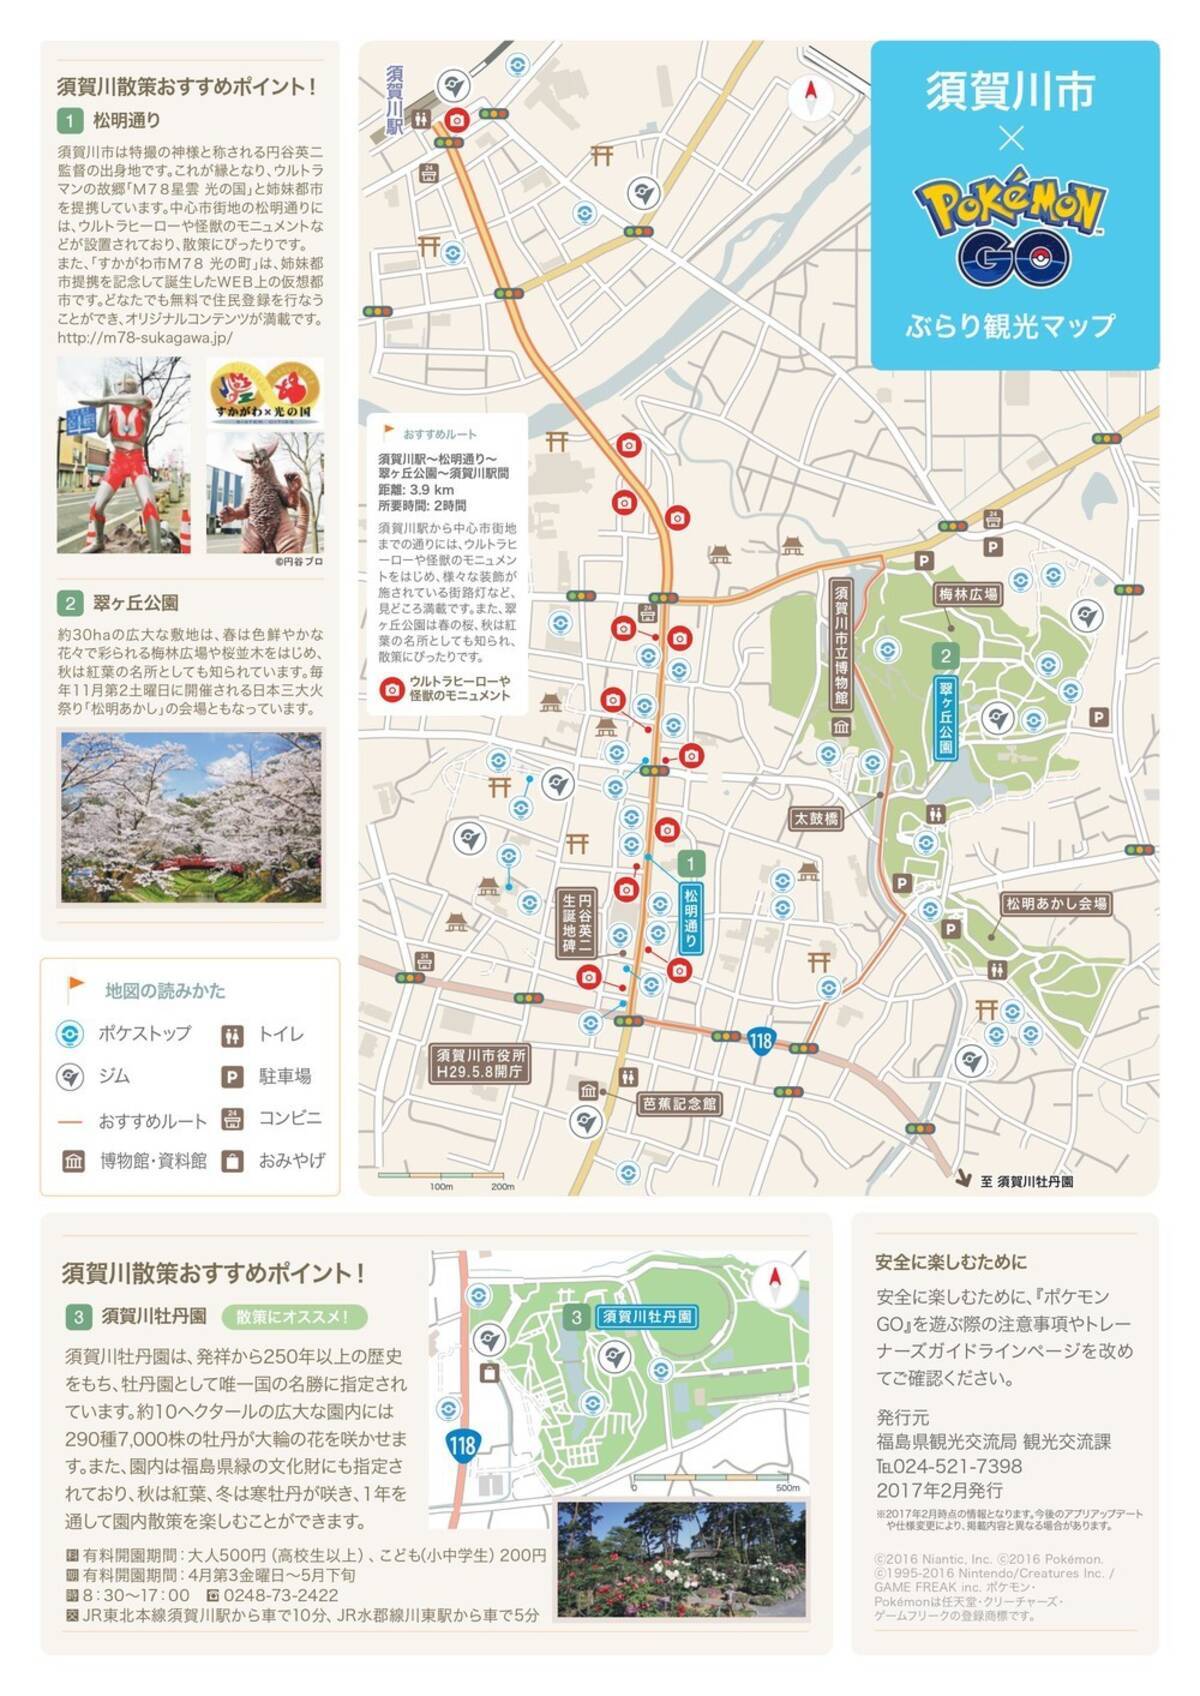 ポケモンgo 公認のぶらり観光マップ 第1弾は福島県須賀川市 17年2月23日 エキサイトニュース